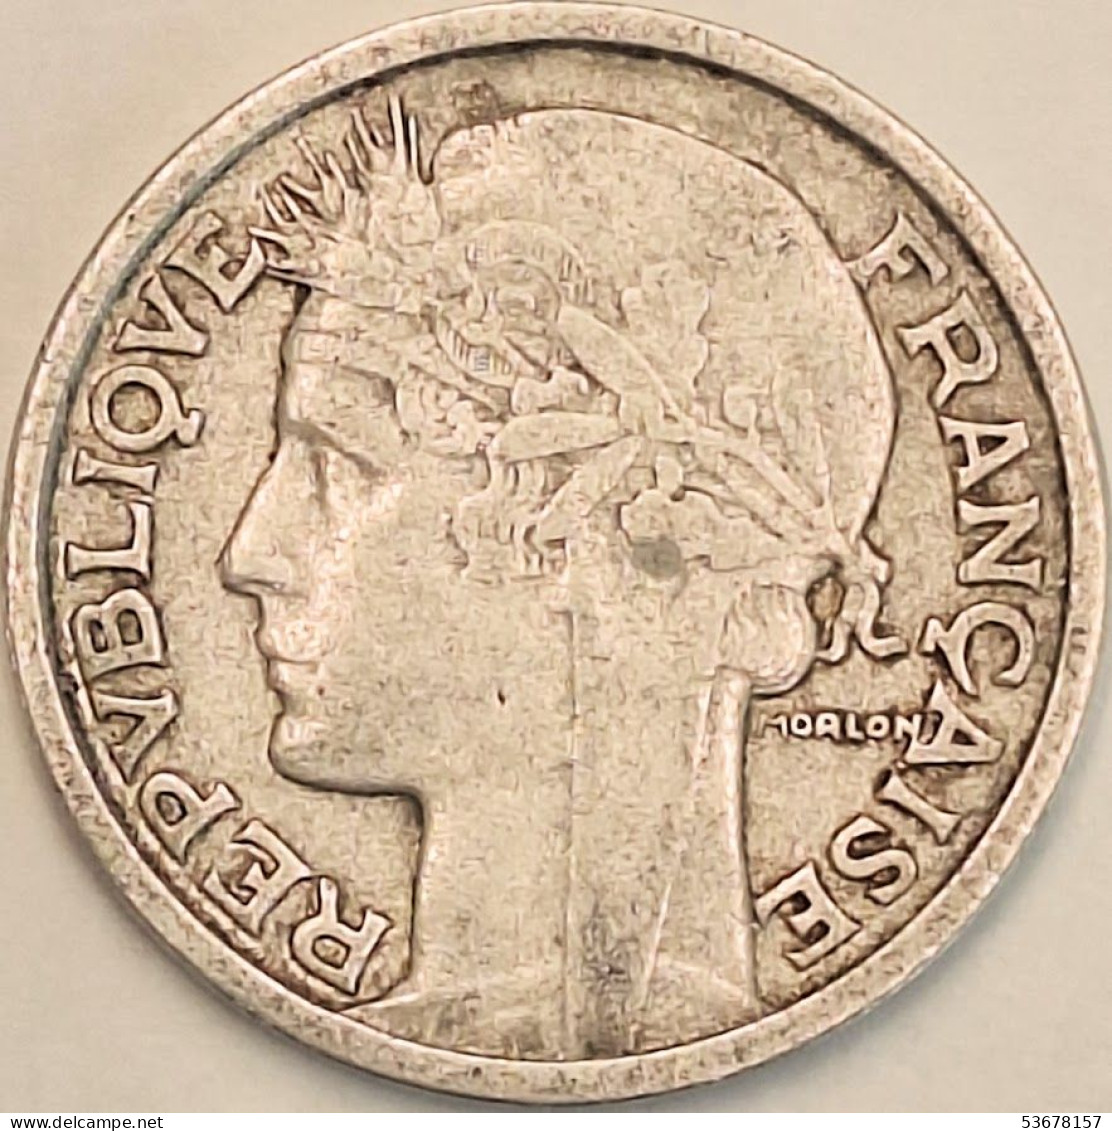 France - 2 Francs 1949, KM# 886a.1 (#4110) - 2 Francs